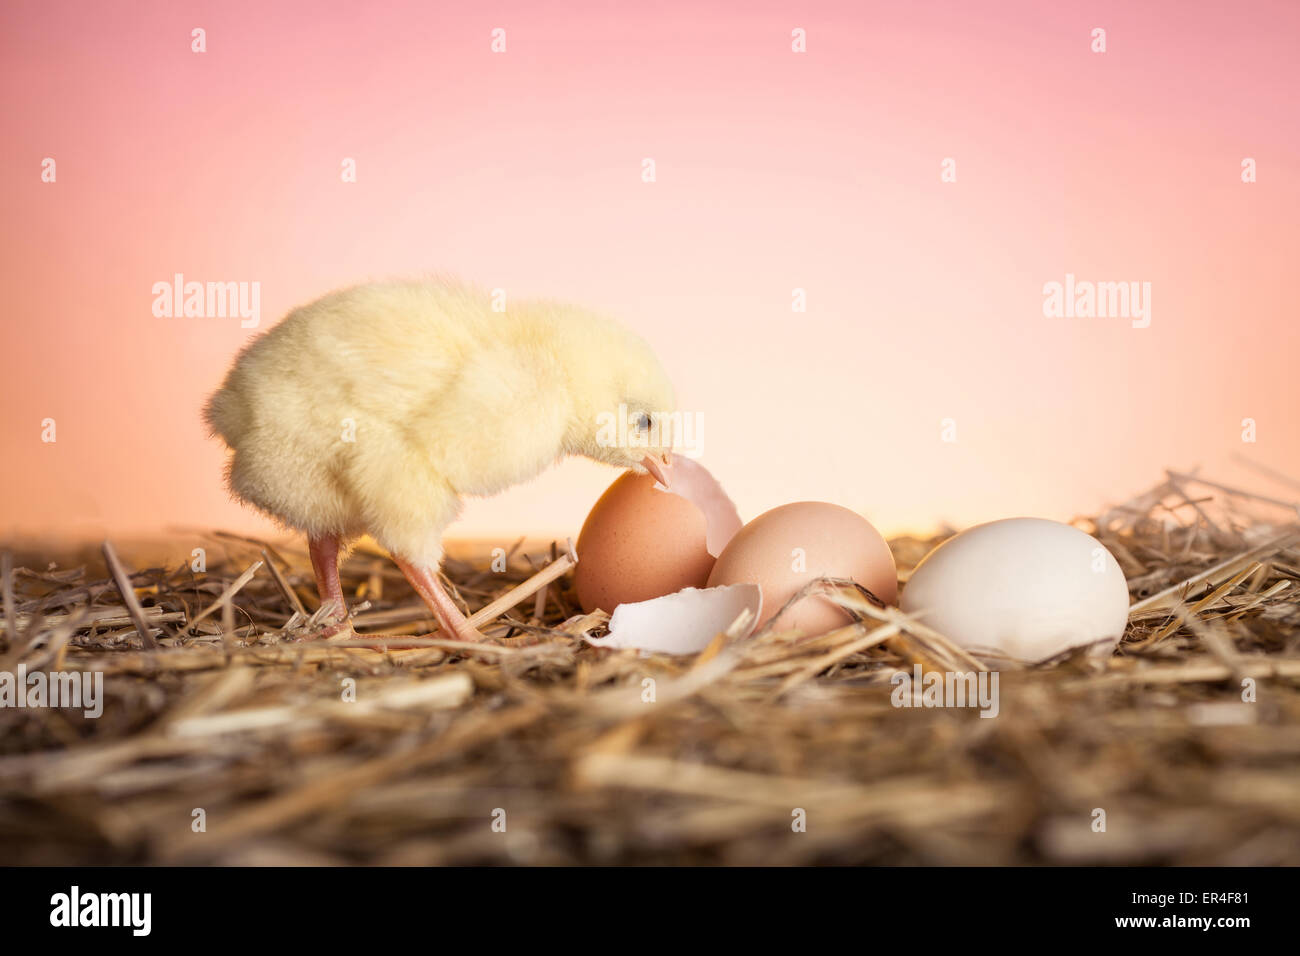 Fresco pulcino tratteggiata guardando le uova in un nido Foto Stock